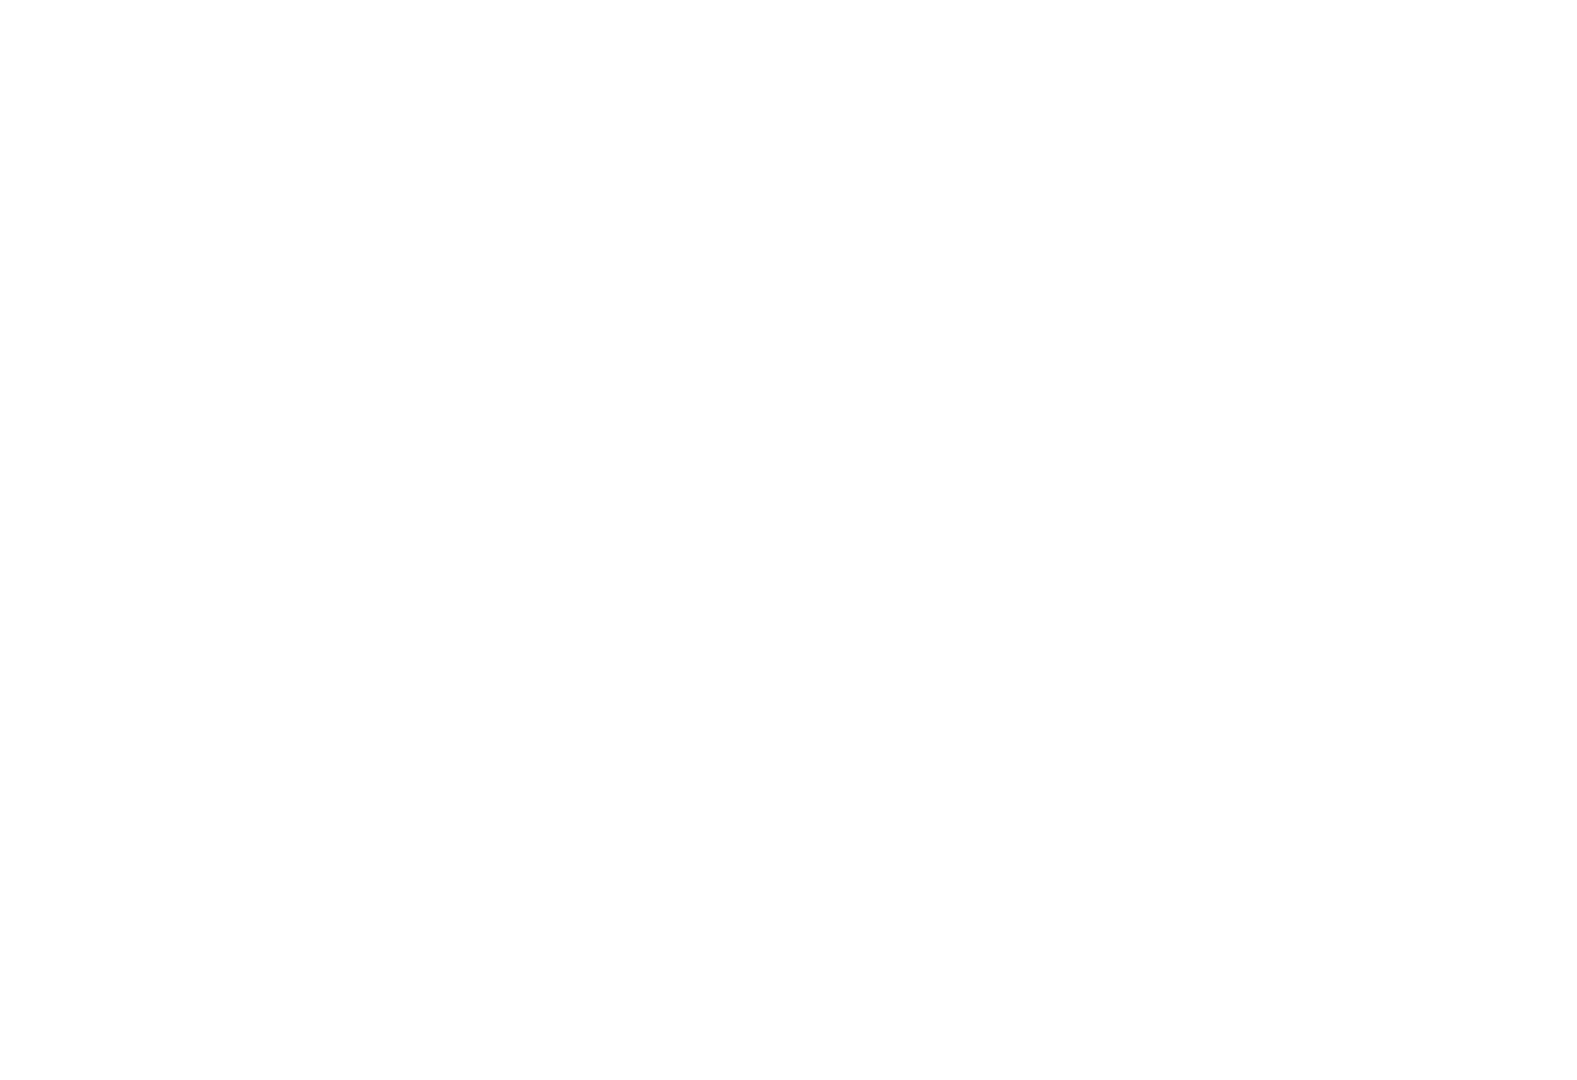 Entagra Coach